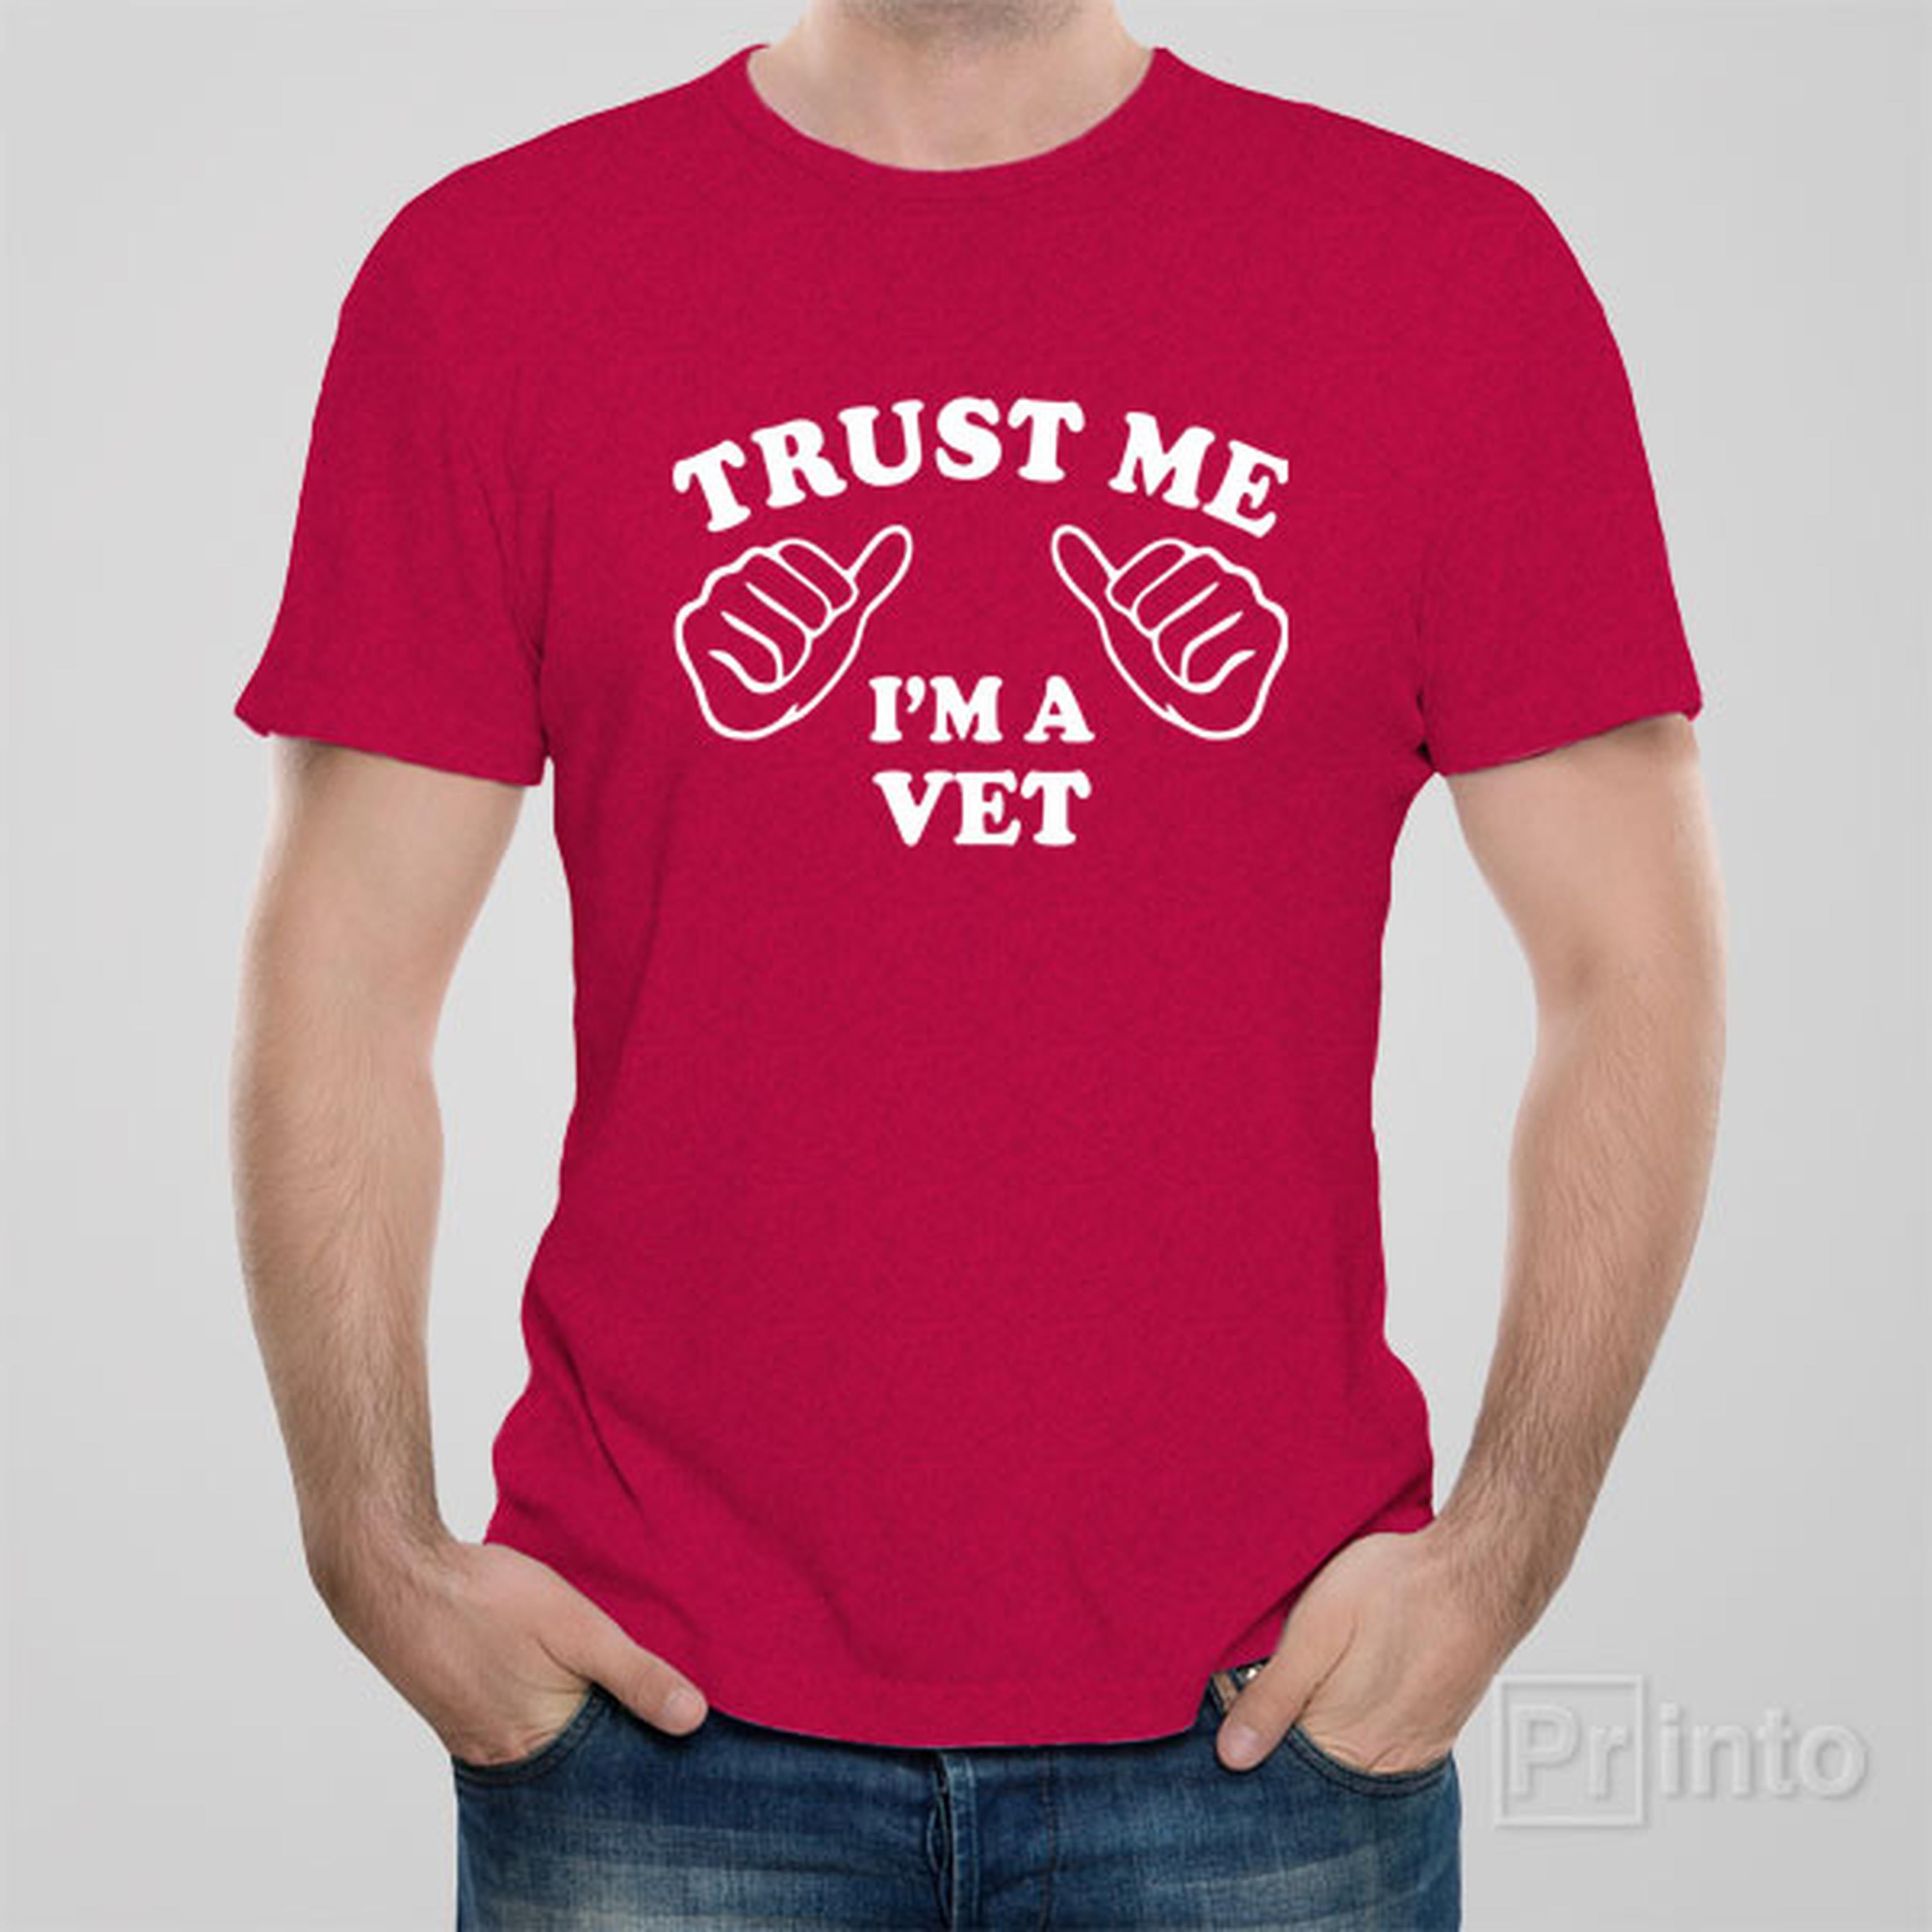 trust-me-i-am-a-vet-t-shirt